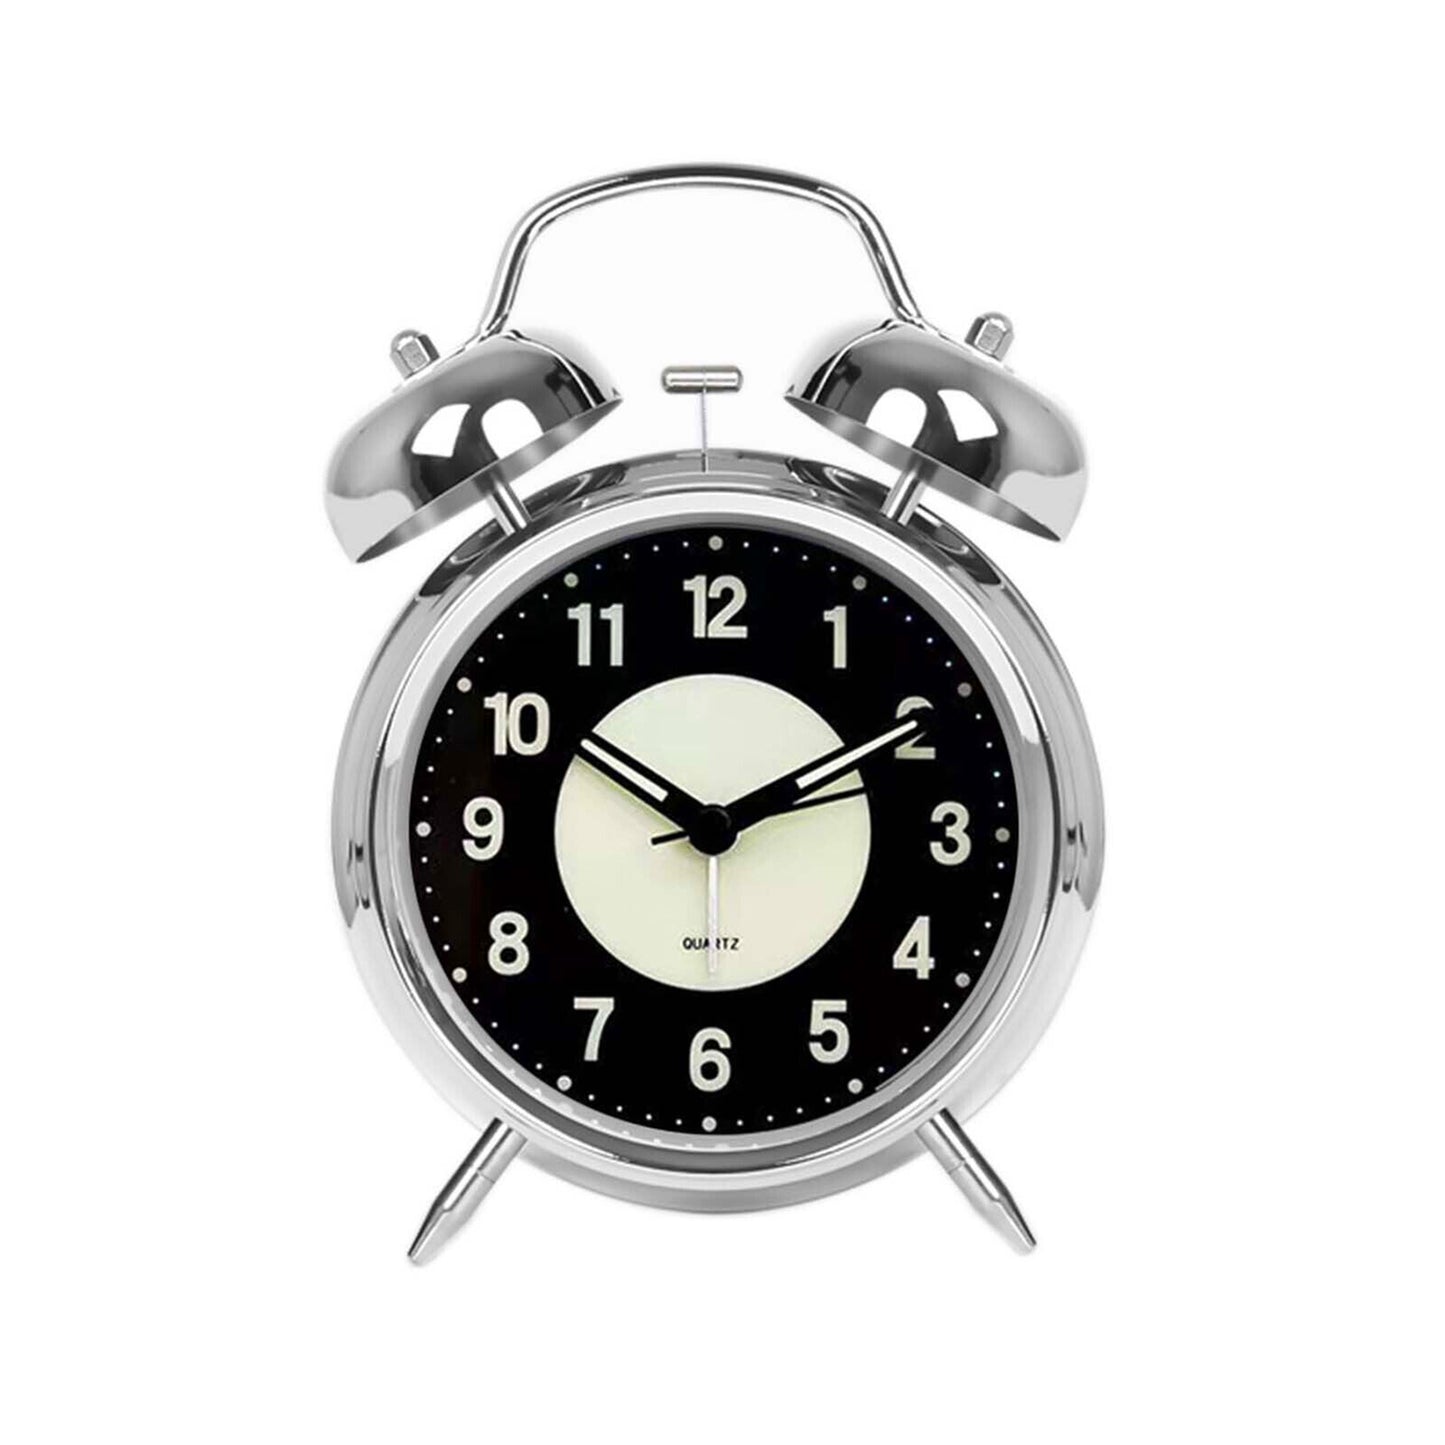 analogue alarm clock